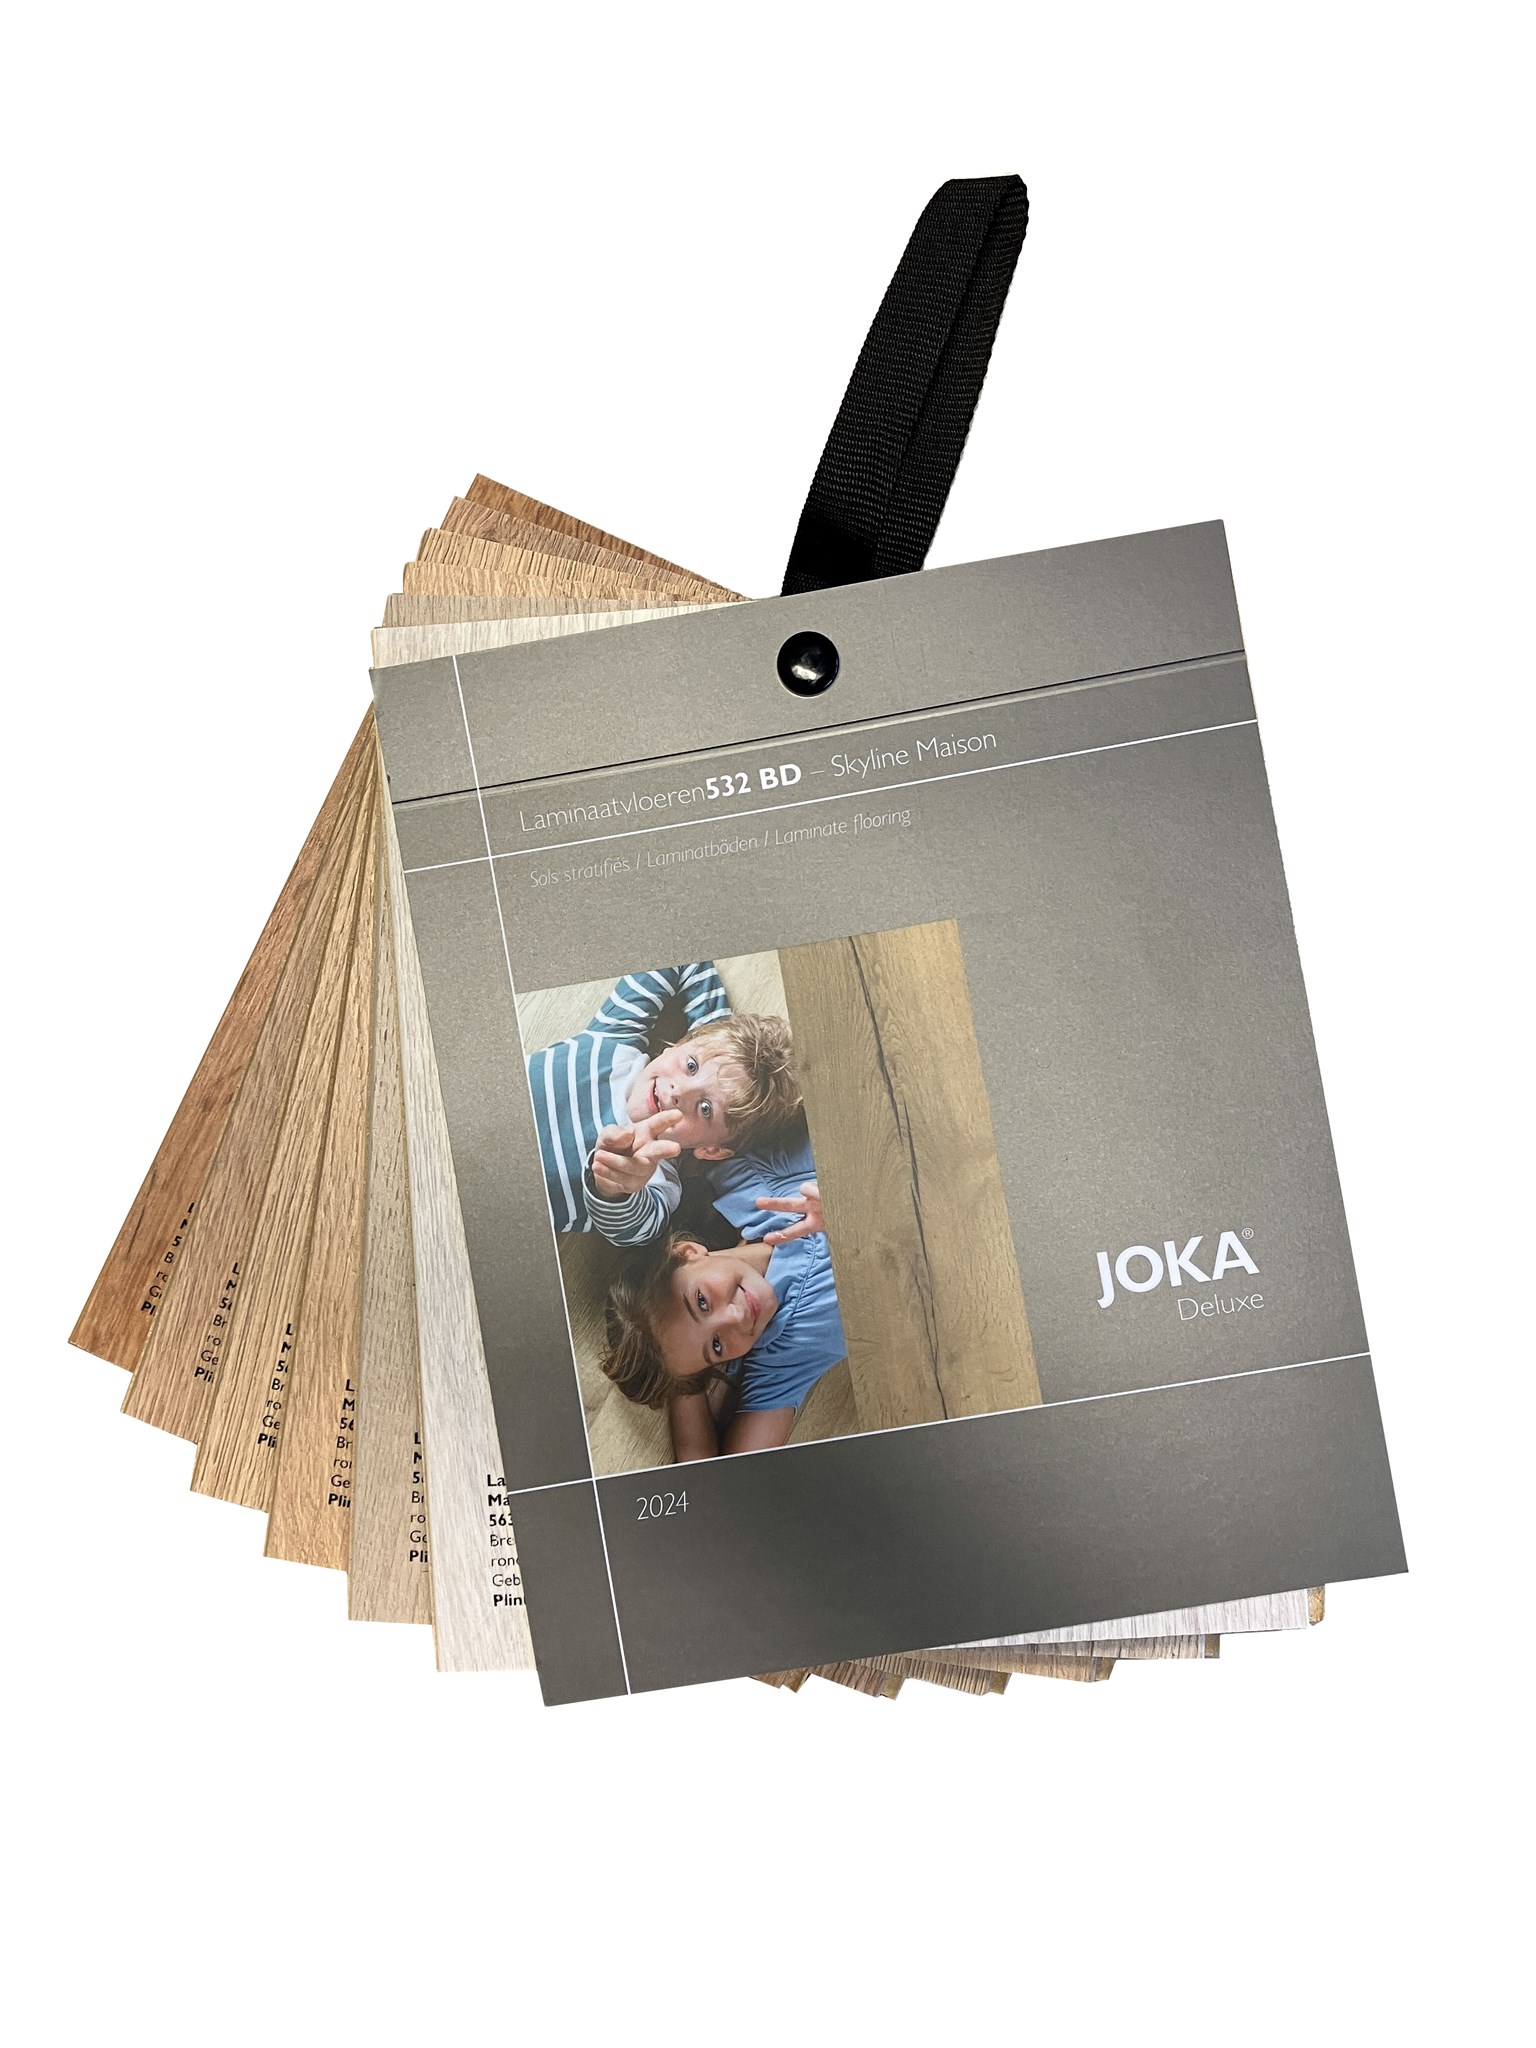 Afbeelding van JOKA Collectie Laminaat Skyline / Maison 532 BD 2024NL  #11133